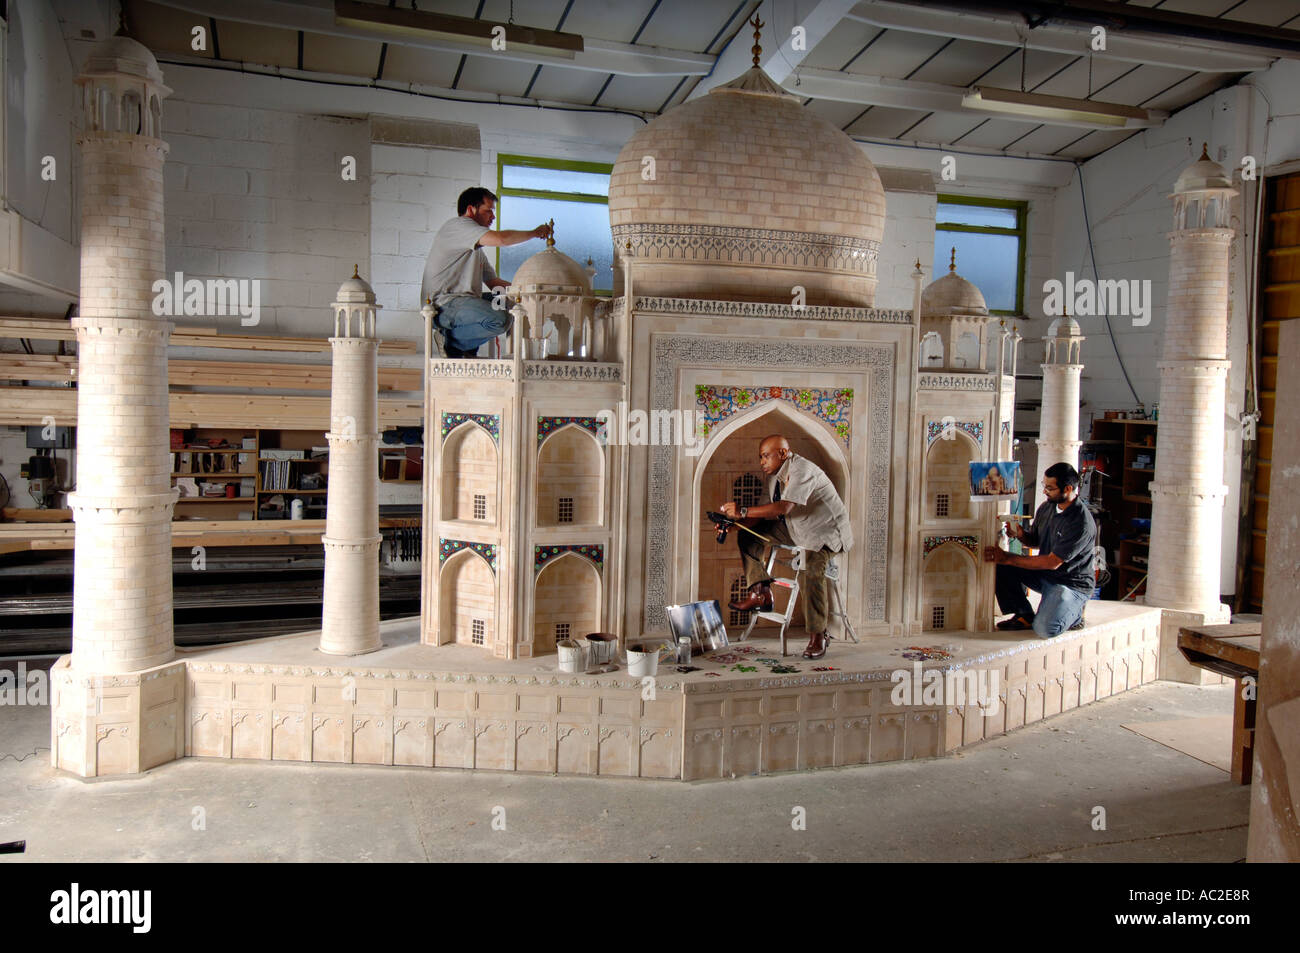 Film di Bollywood art director Bijon Das Gupta da Mumbai India lavora su un modello in scala del Taj Mahal Foto Stock